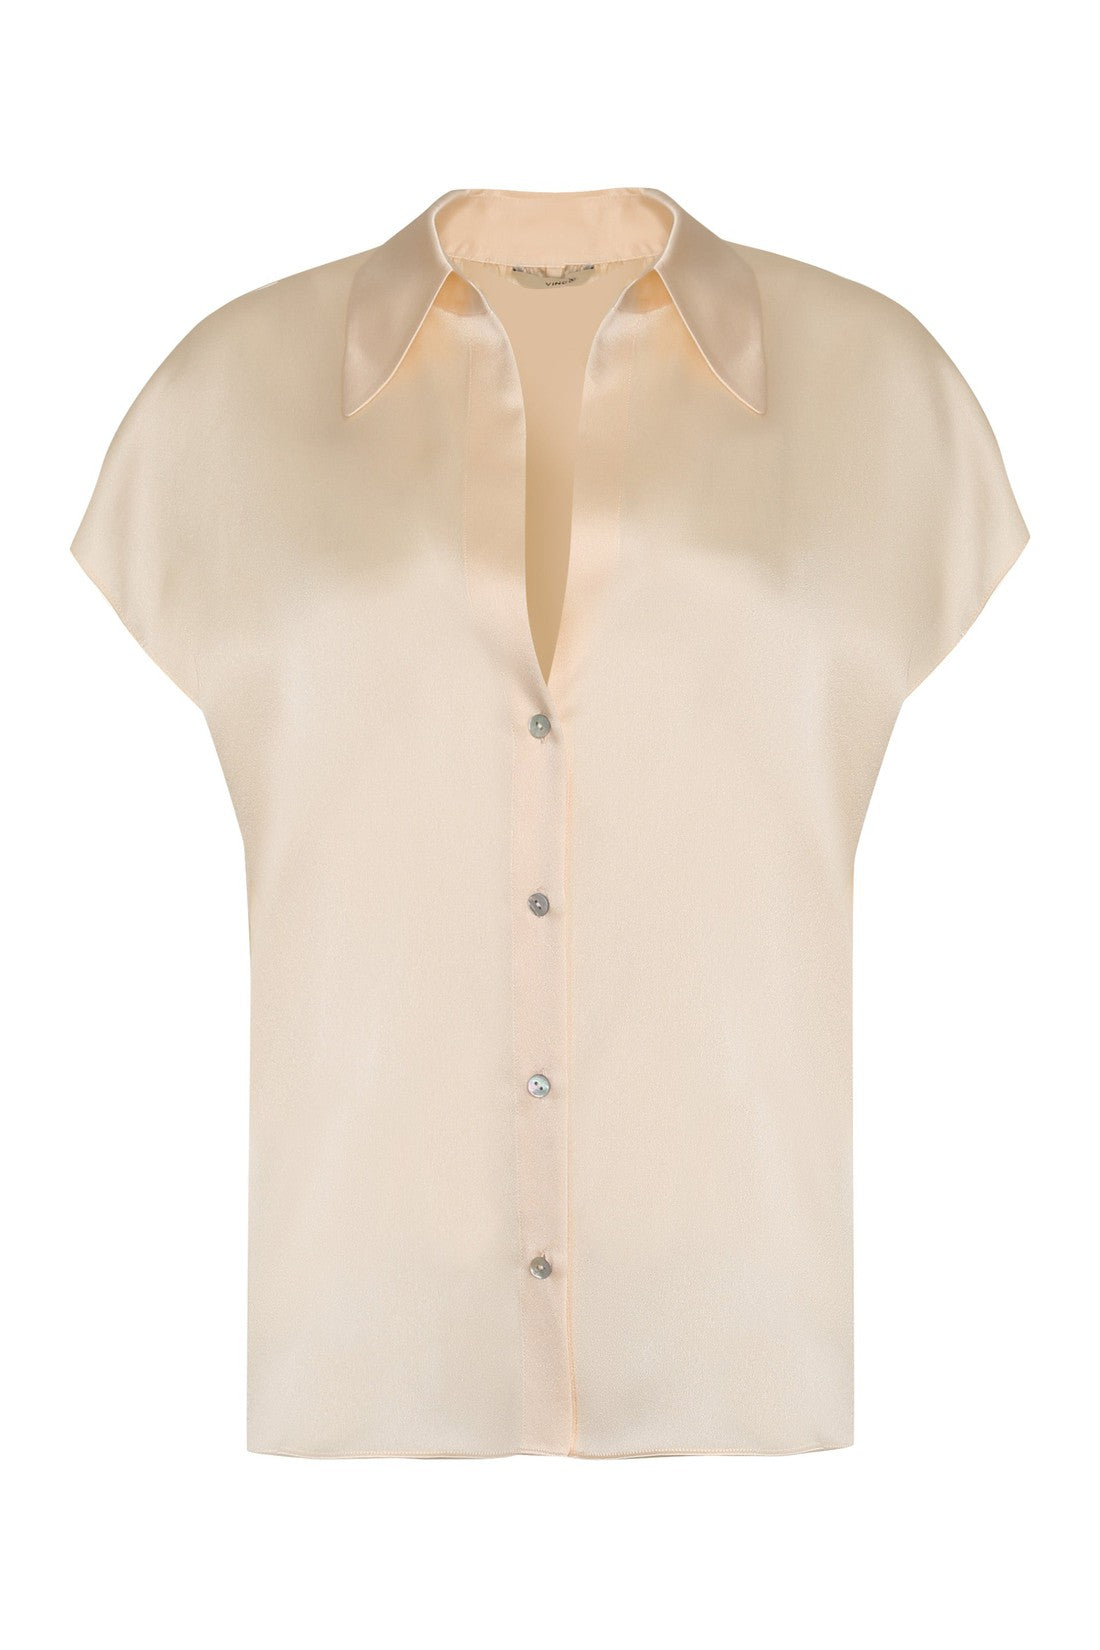 Vince-OUTLET-SALE-Silk blouse-ARCHIVIST